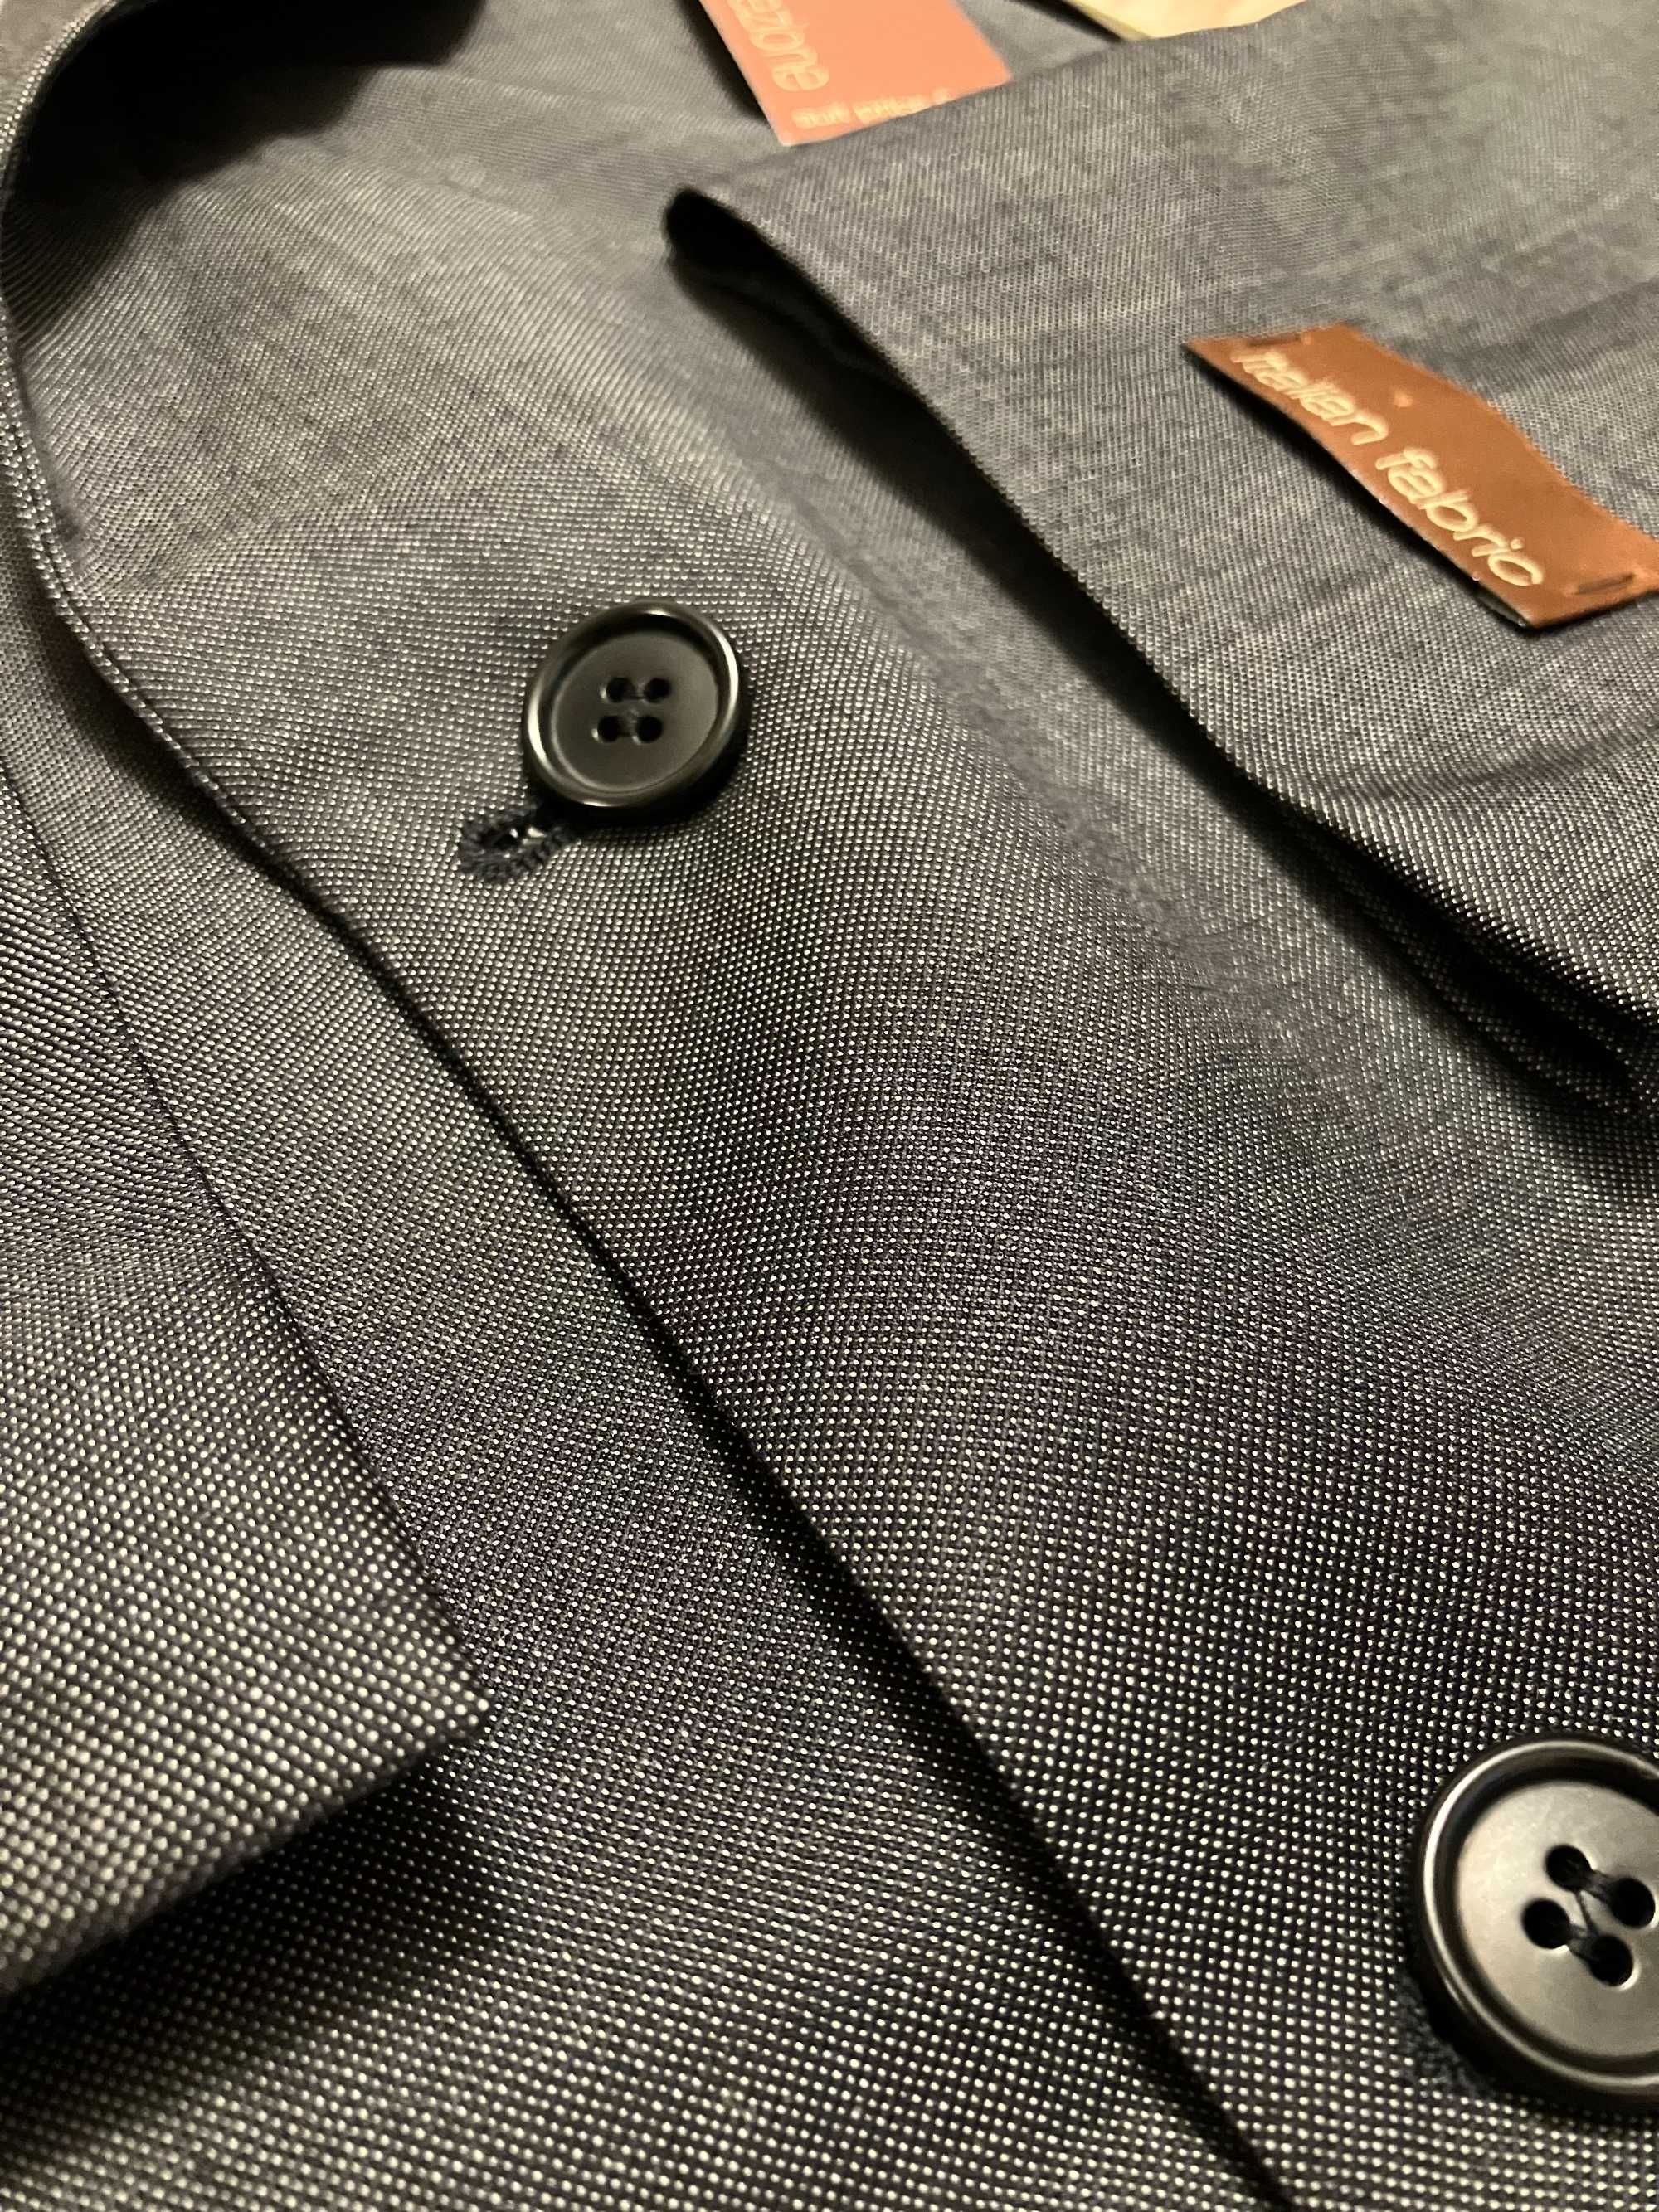 Пиджак мужской шерсть 52 marcs&spencer оригинал новое